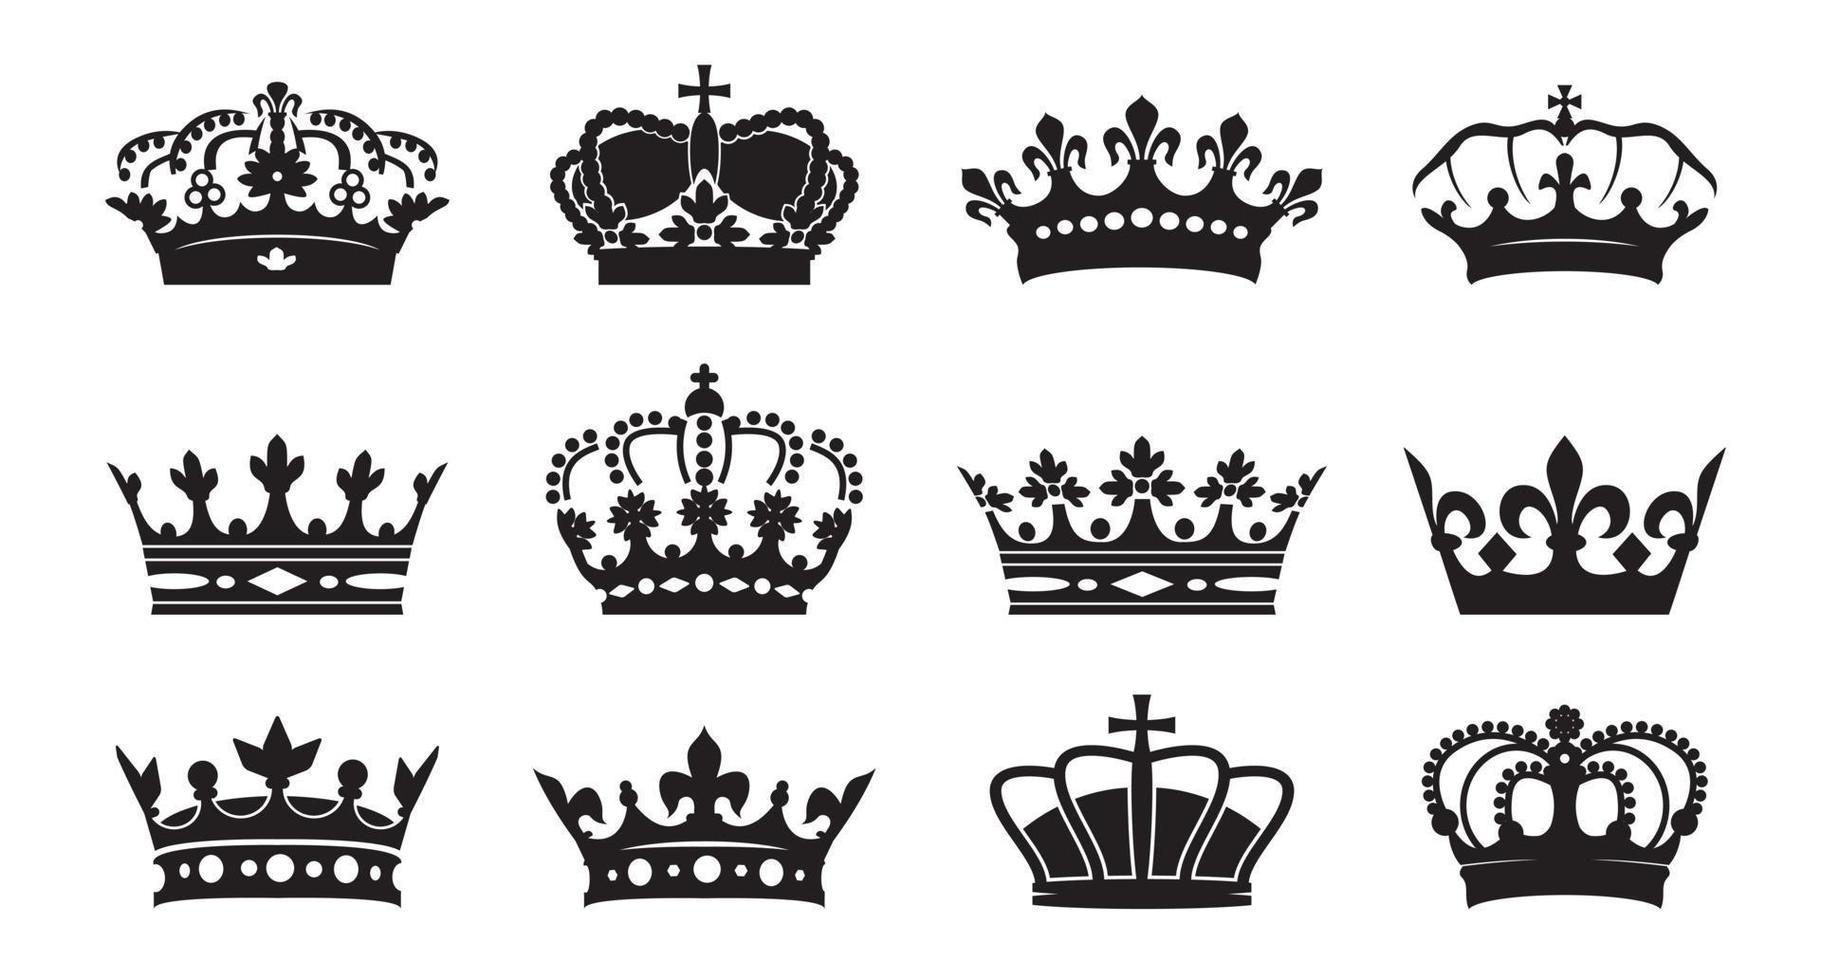 impostare l'icona delle corone del re vettoriale su sfondo bianco. illustrazione vettoriale. emblema e simboli reali.